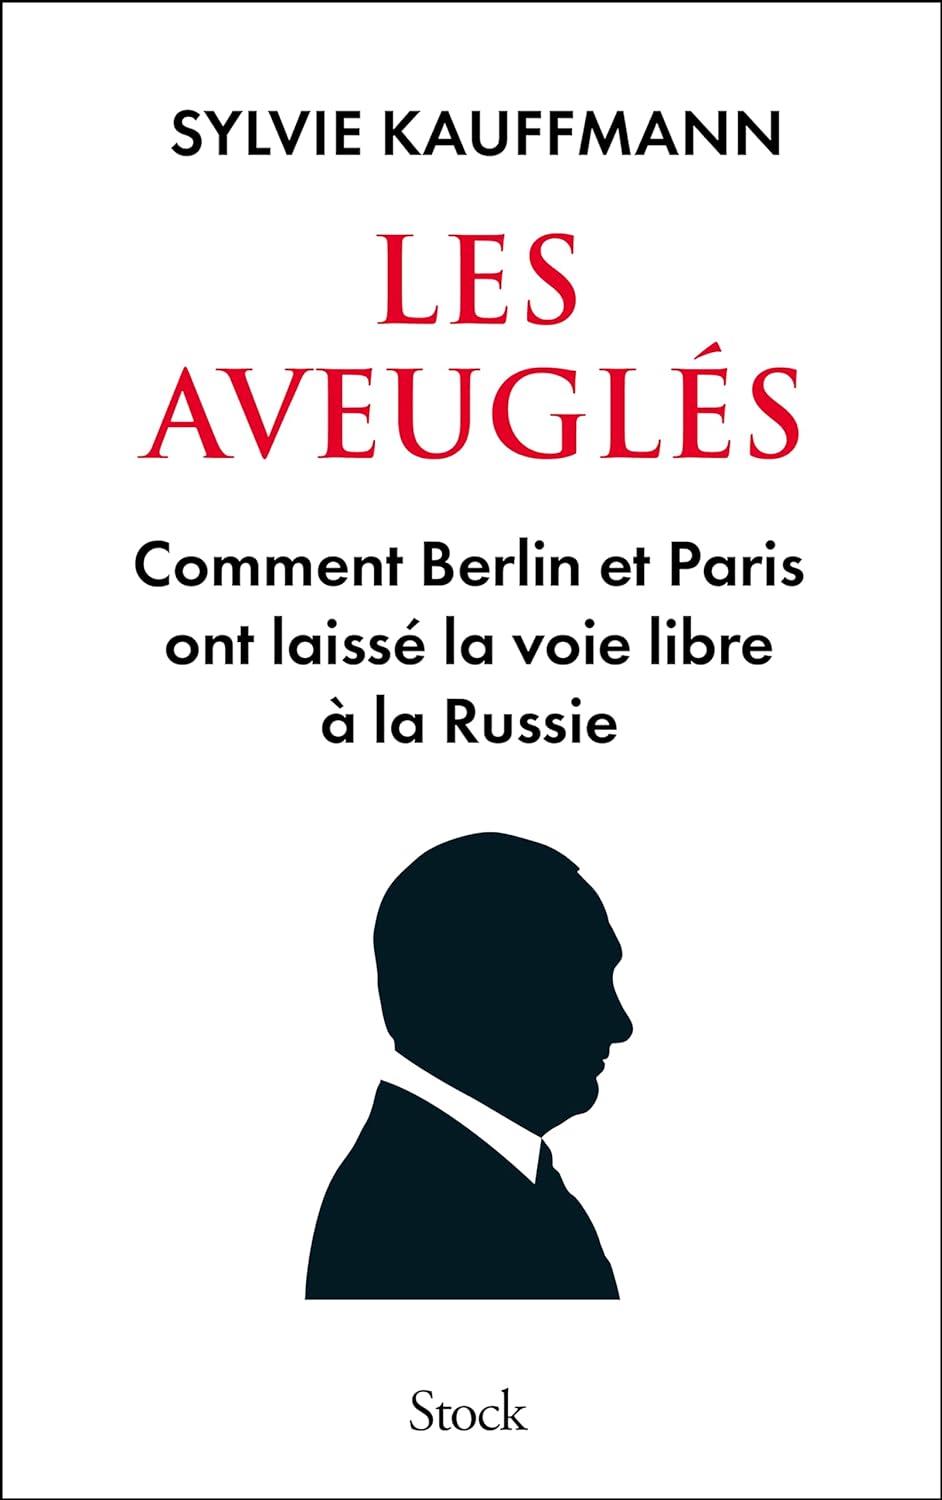 フランスのジャーナリスト、シルヴィー・カウフマンの著書『Les Aveuglés』